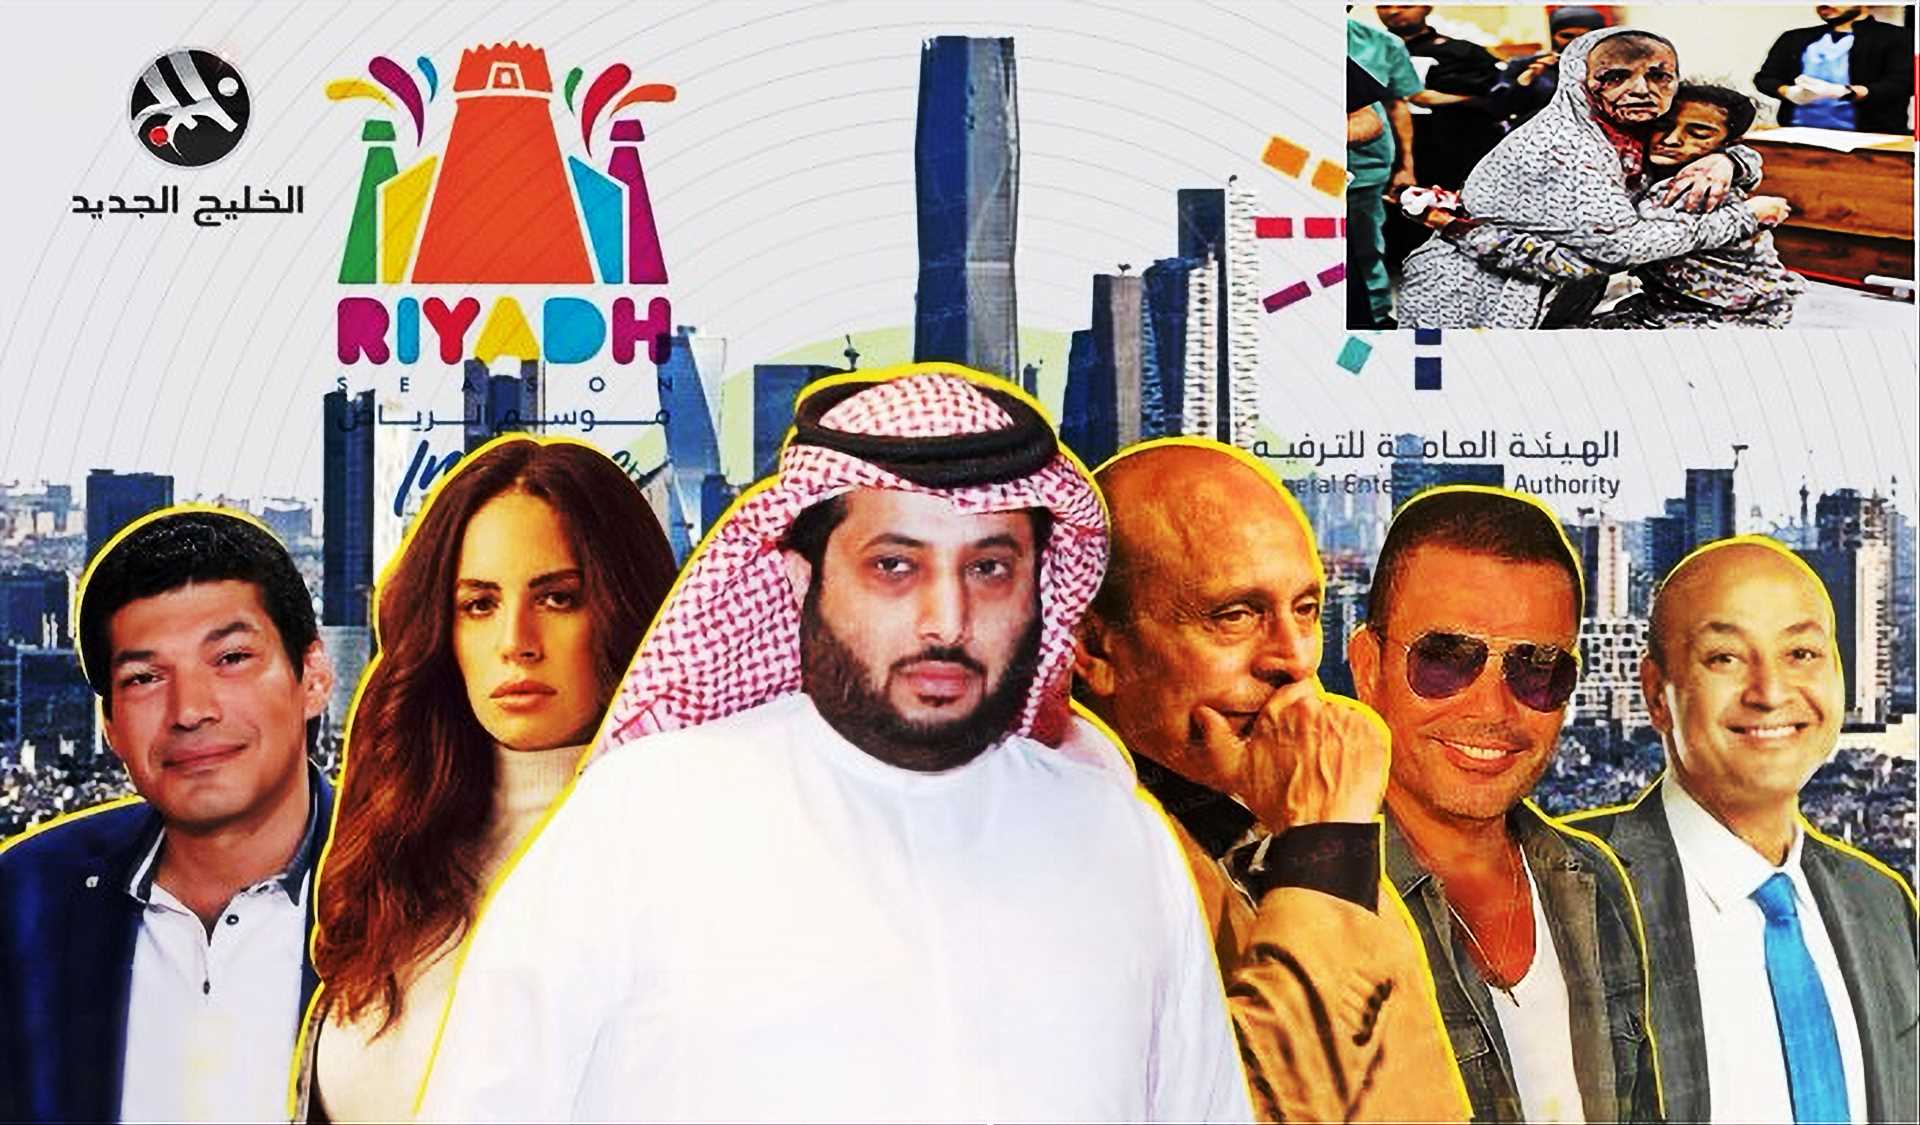 الساقطون إلى قعر فن الارتزاق على موائد العهر السعودي